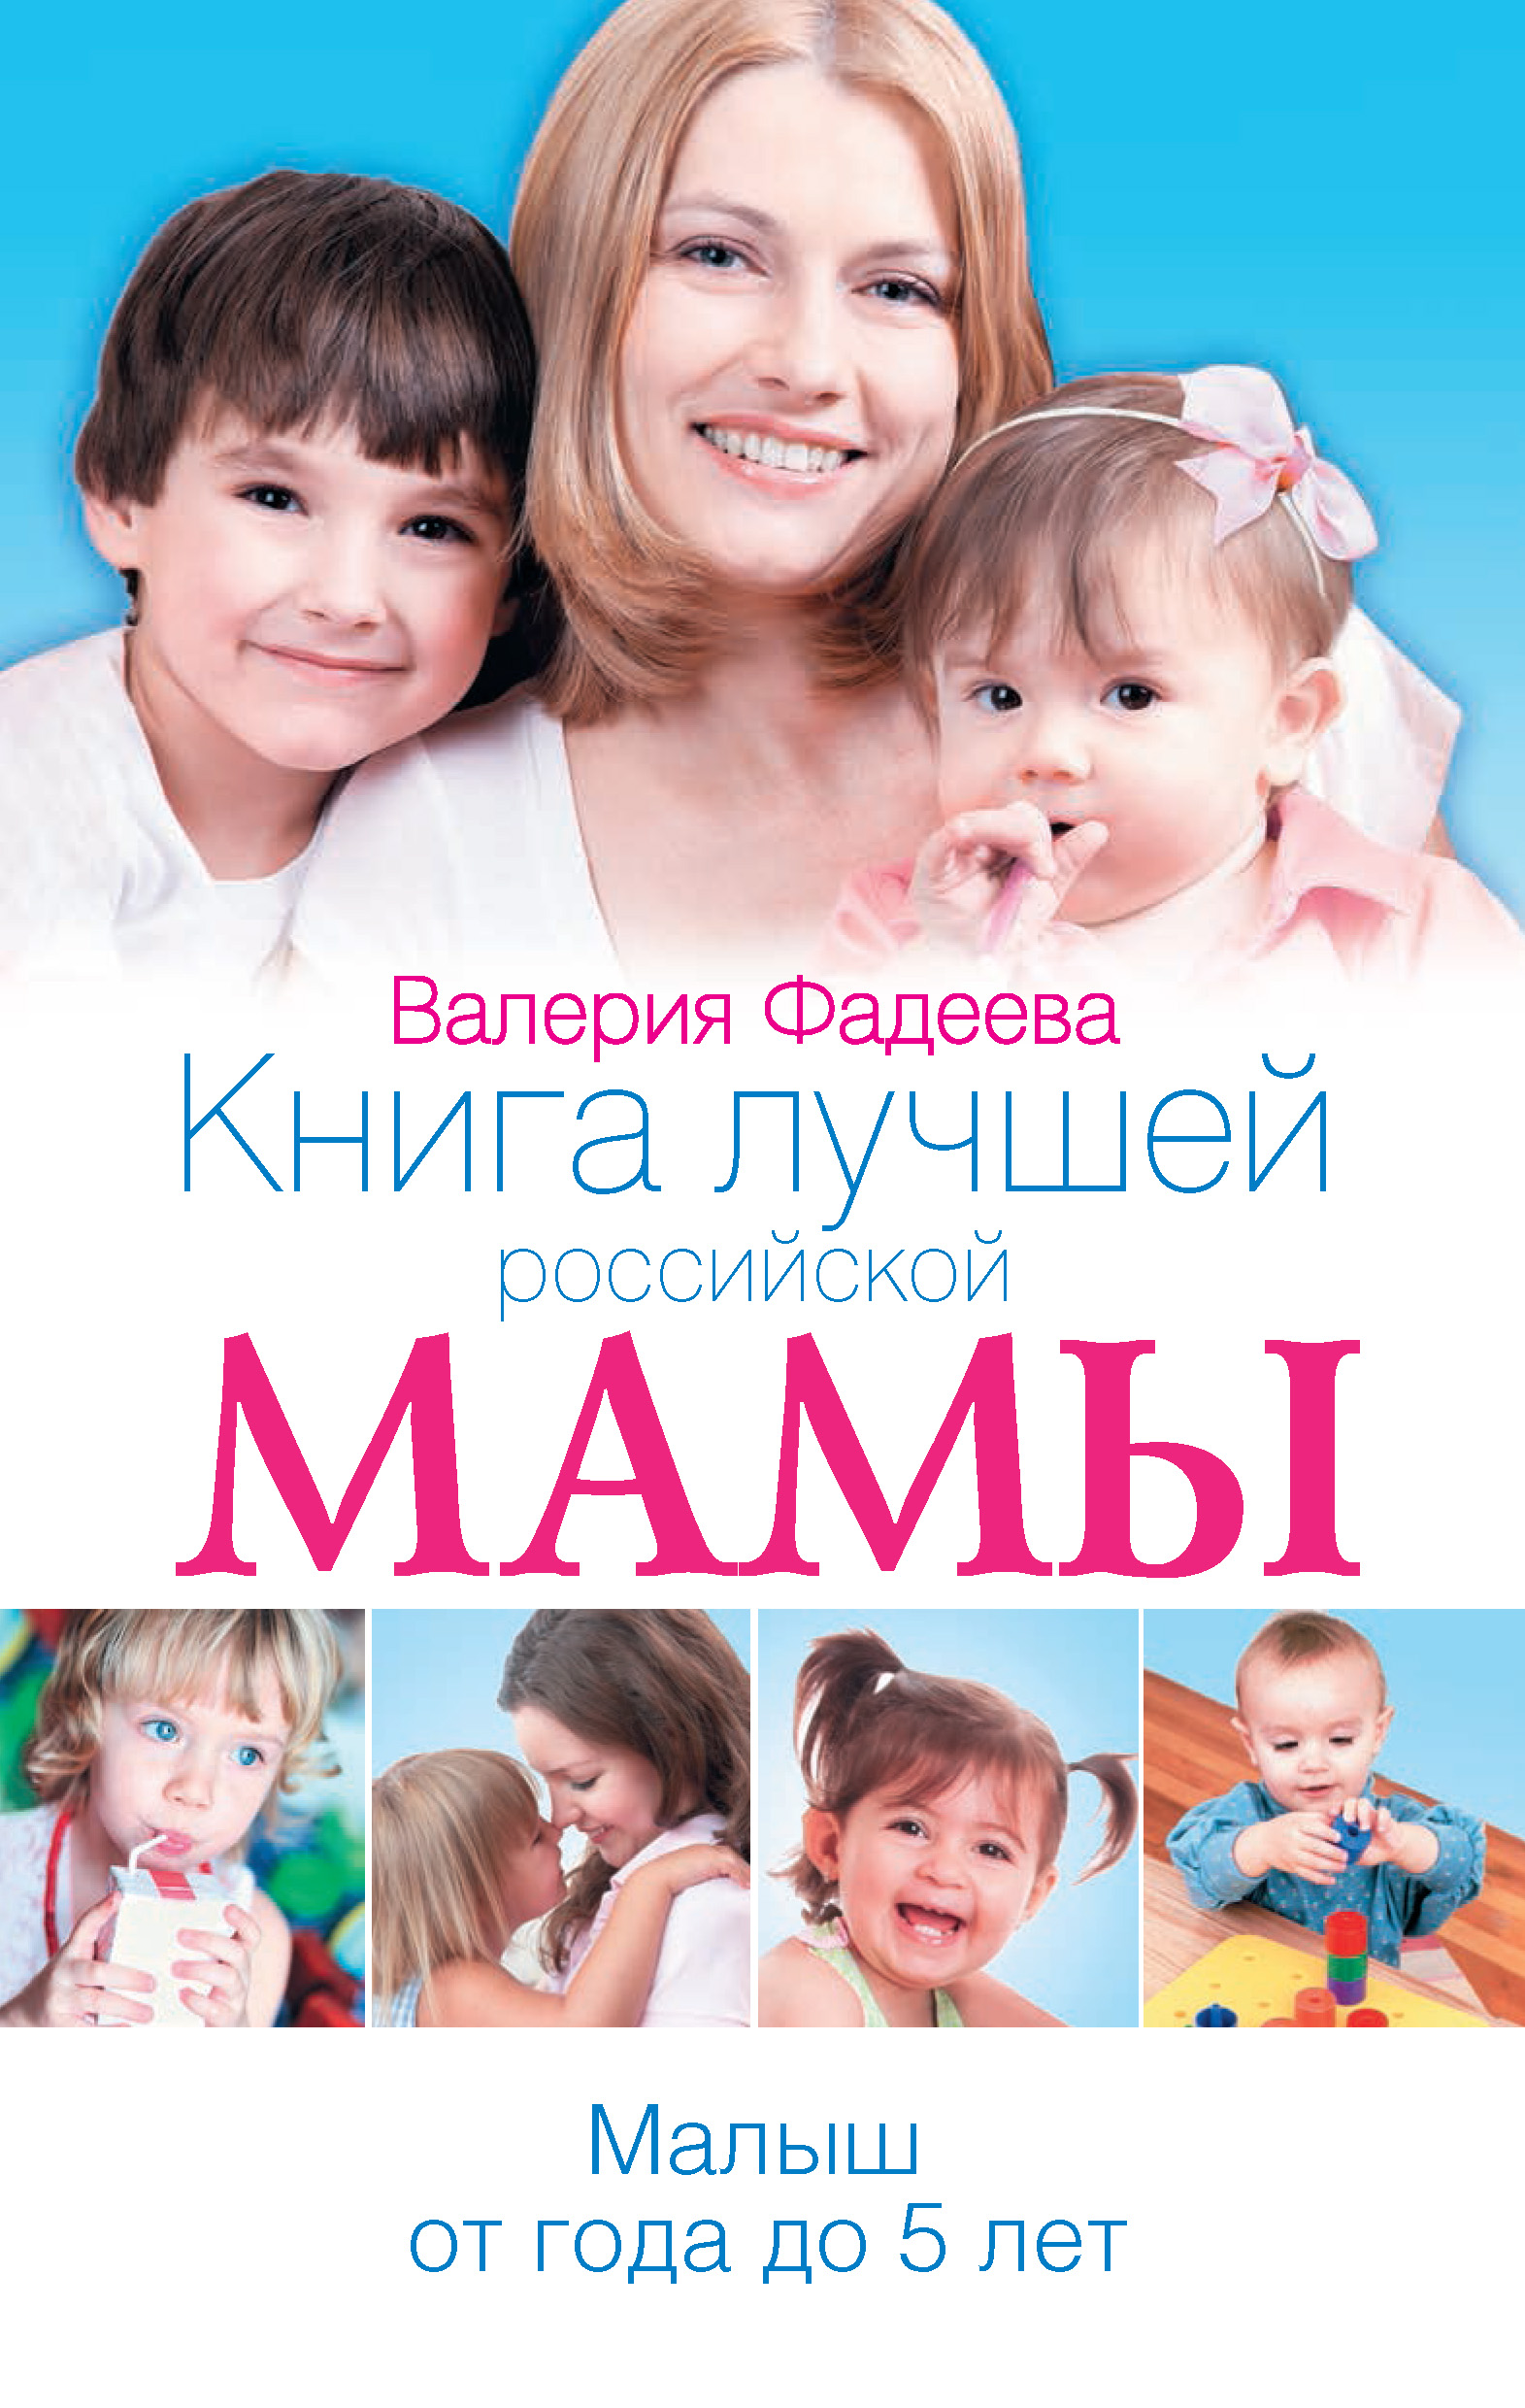 Лучшие мамы россии. Главная Российская книга мамы. Книги для мам популярные. Книги о маме.